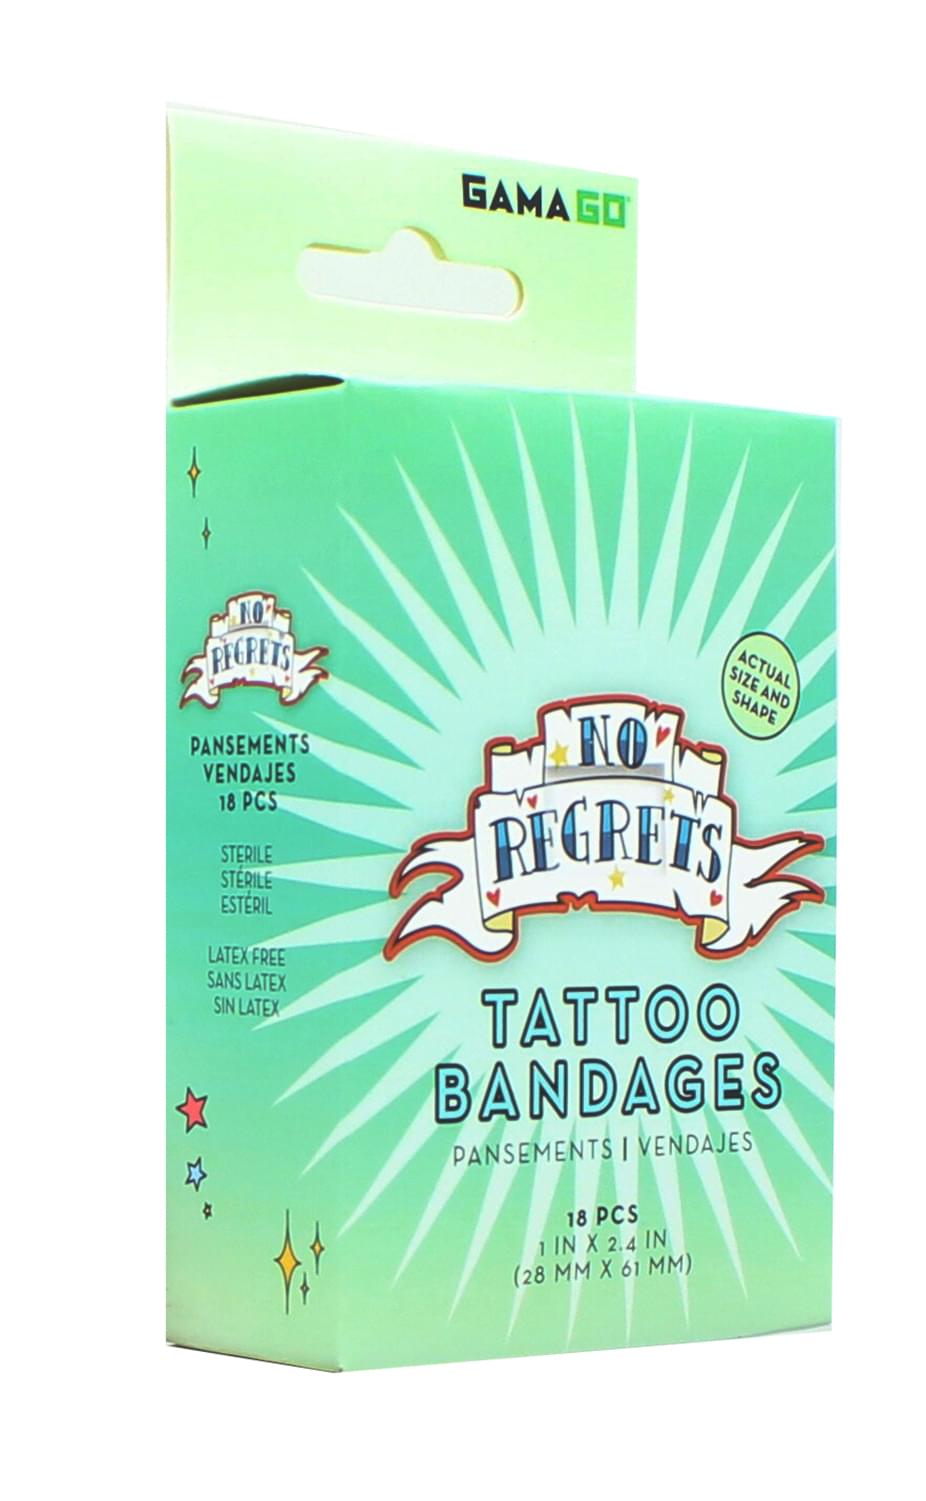 GAMAGO No Regrets Fake Tattoo Bandages , Set Of 18